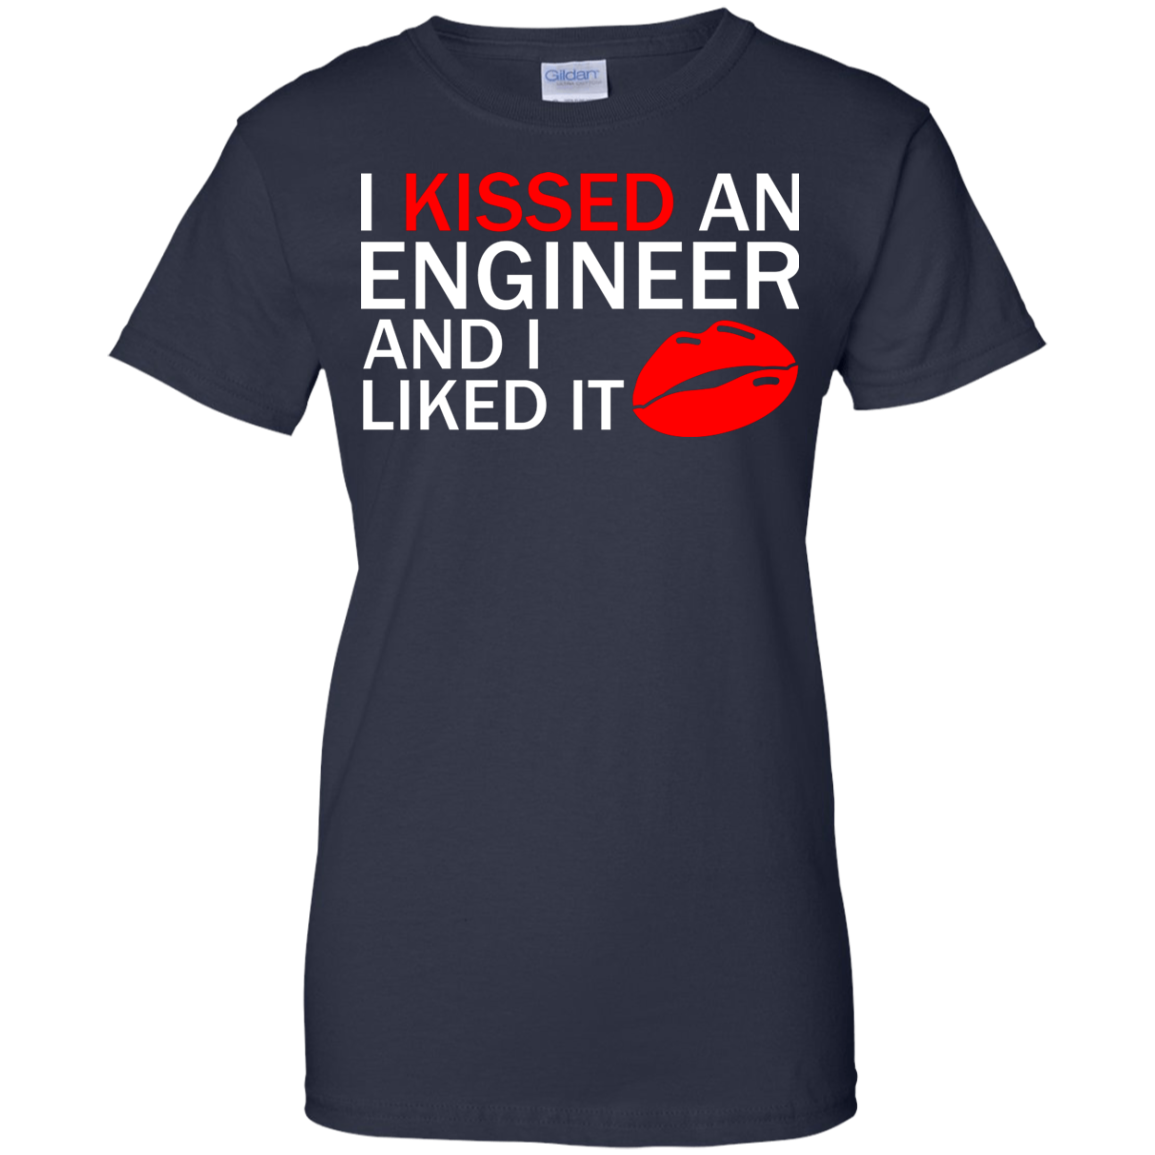 Besé a un ingeniero y me gustó